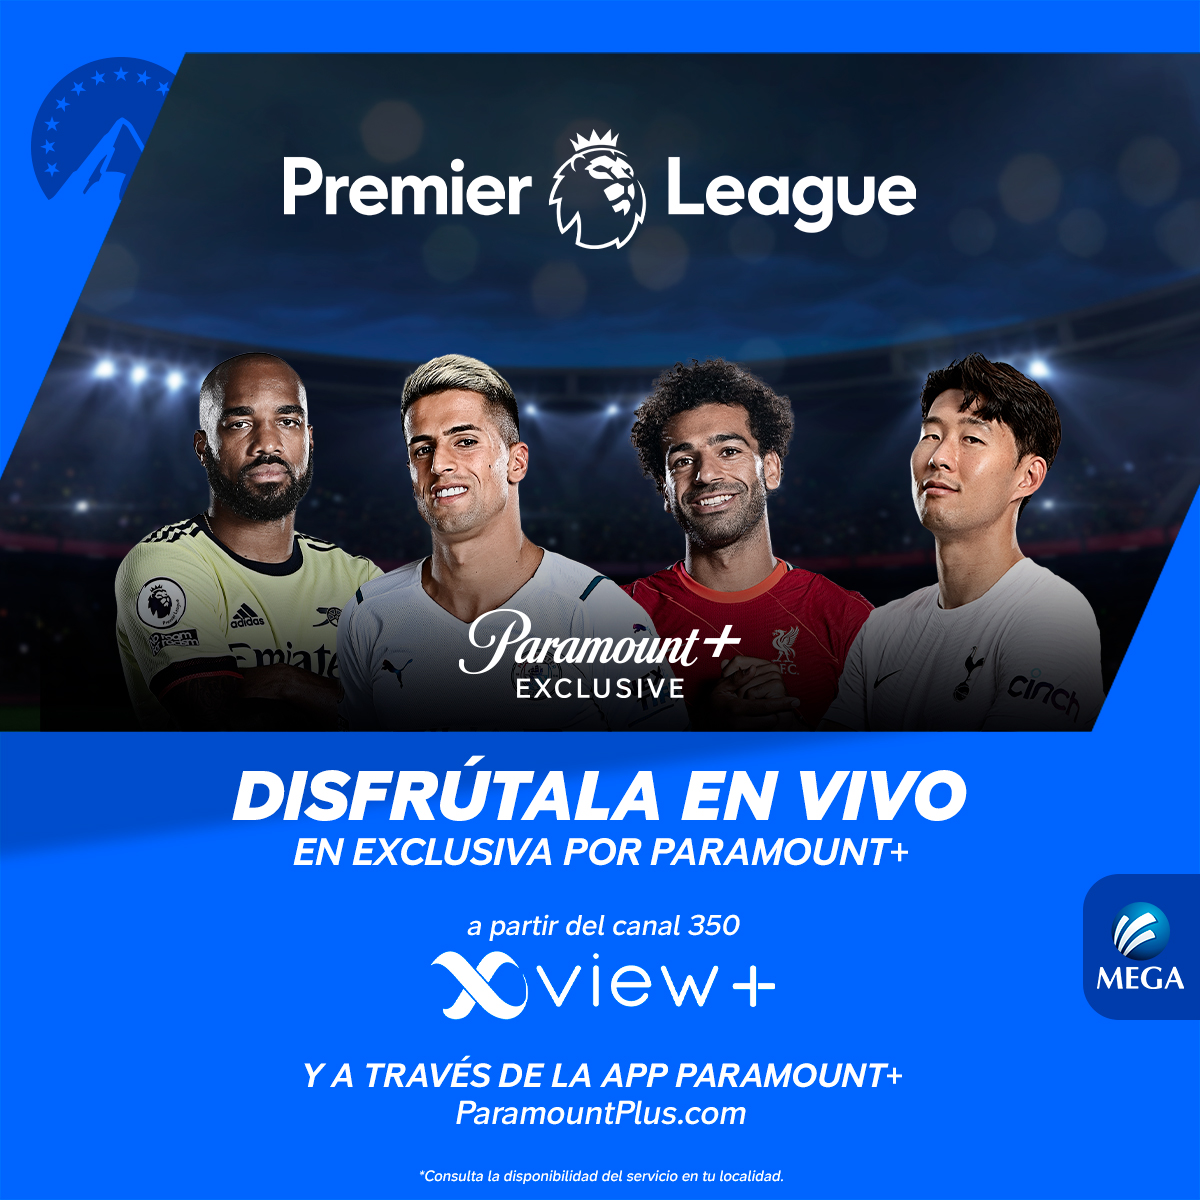 ¡Todos los partidos de #LaPremierEnParamount ⚽ en vivo 📺 en HD 😱 con Xview+! 🔥😎 Tenemos para ti 10 canales con todo el contenido de la Liga Premier con #Mega 🏆😉 a partir del canal 350 / 1350 HD 📺😱